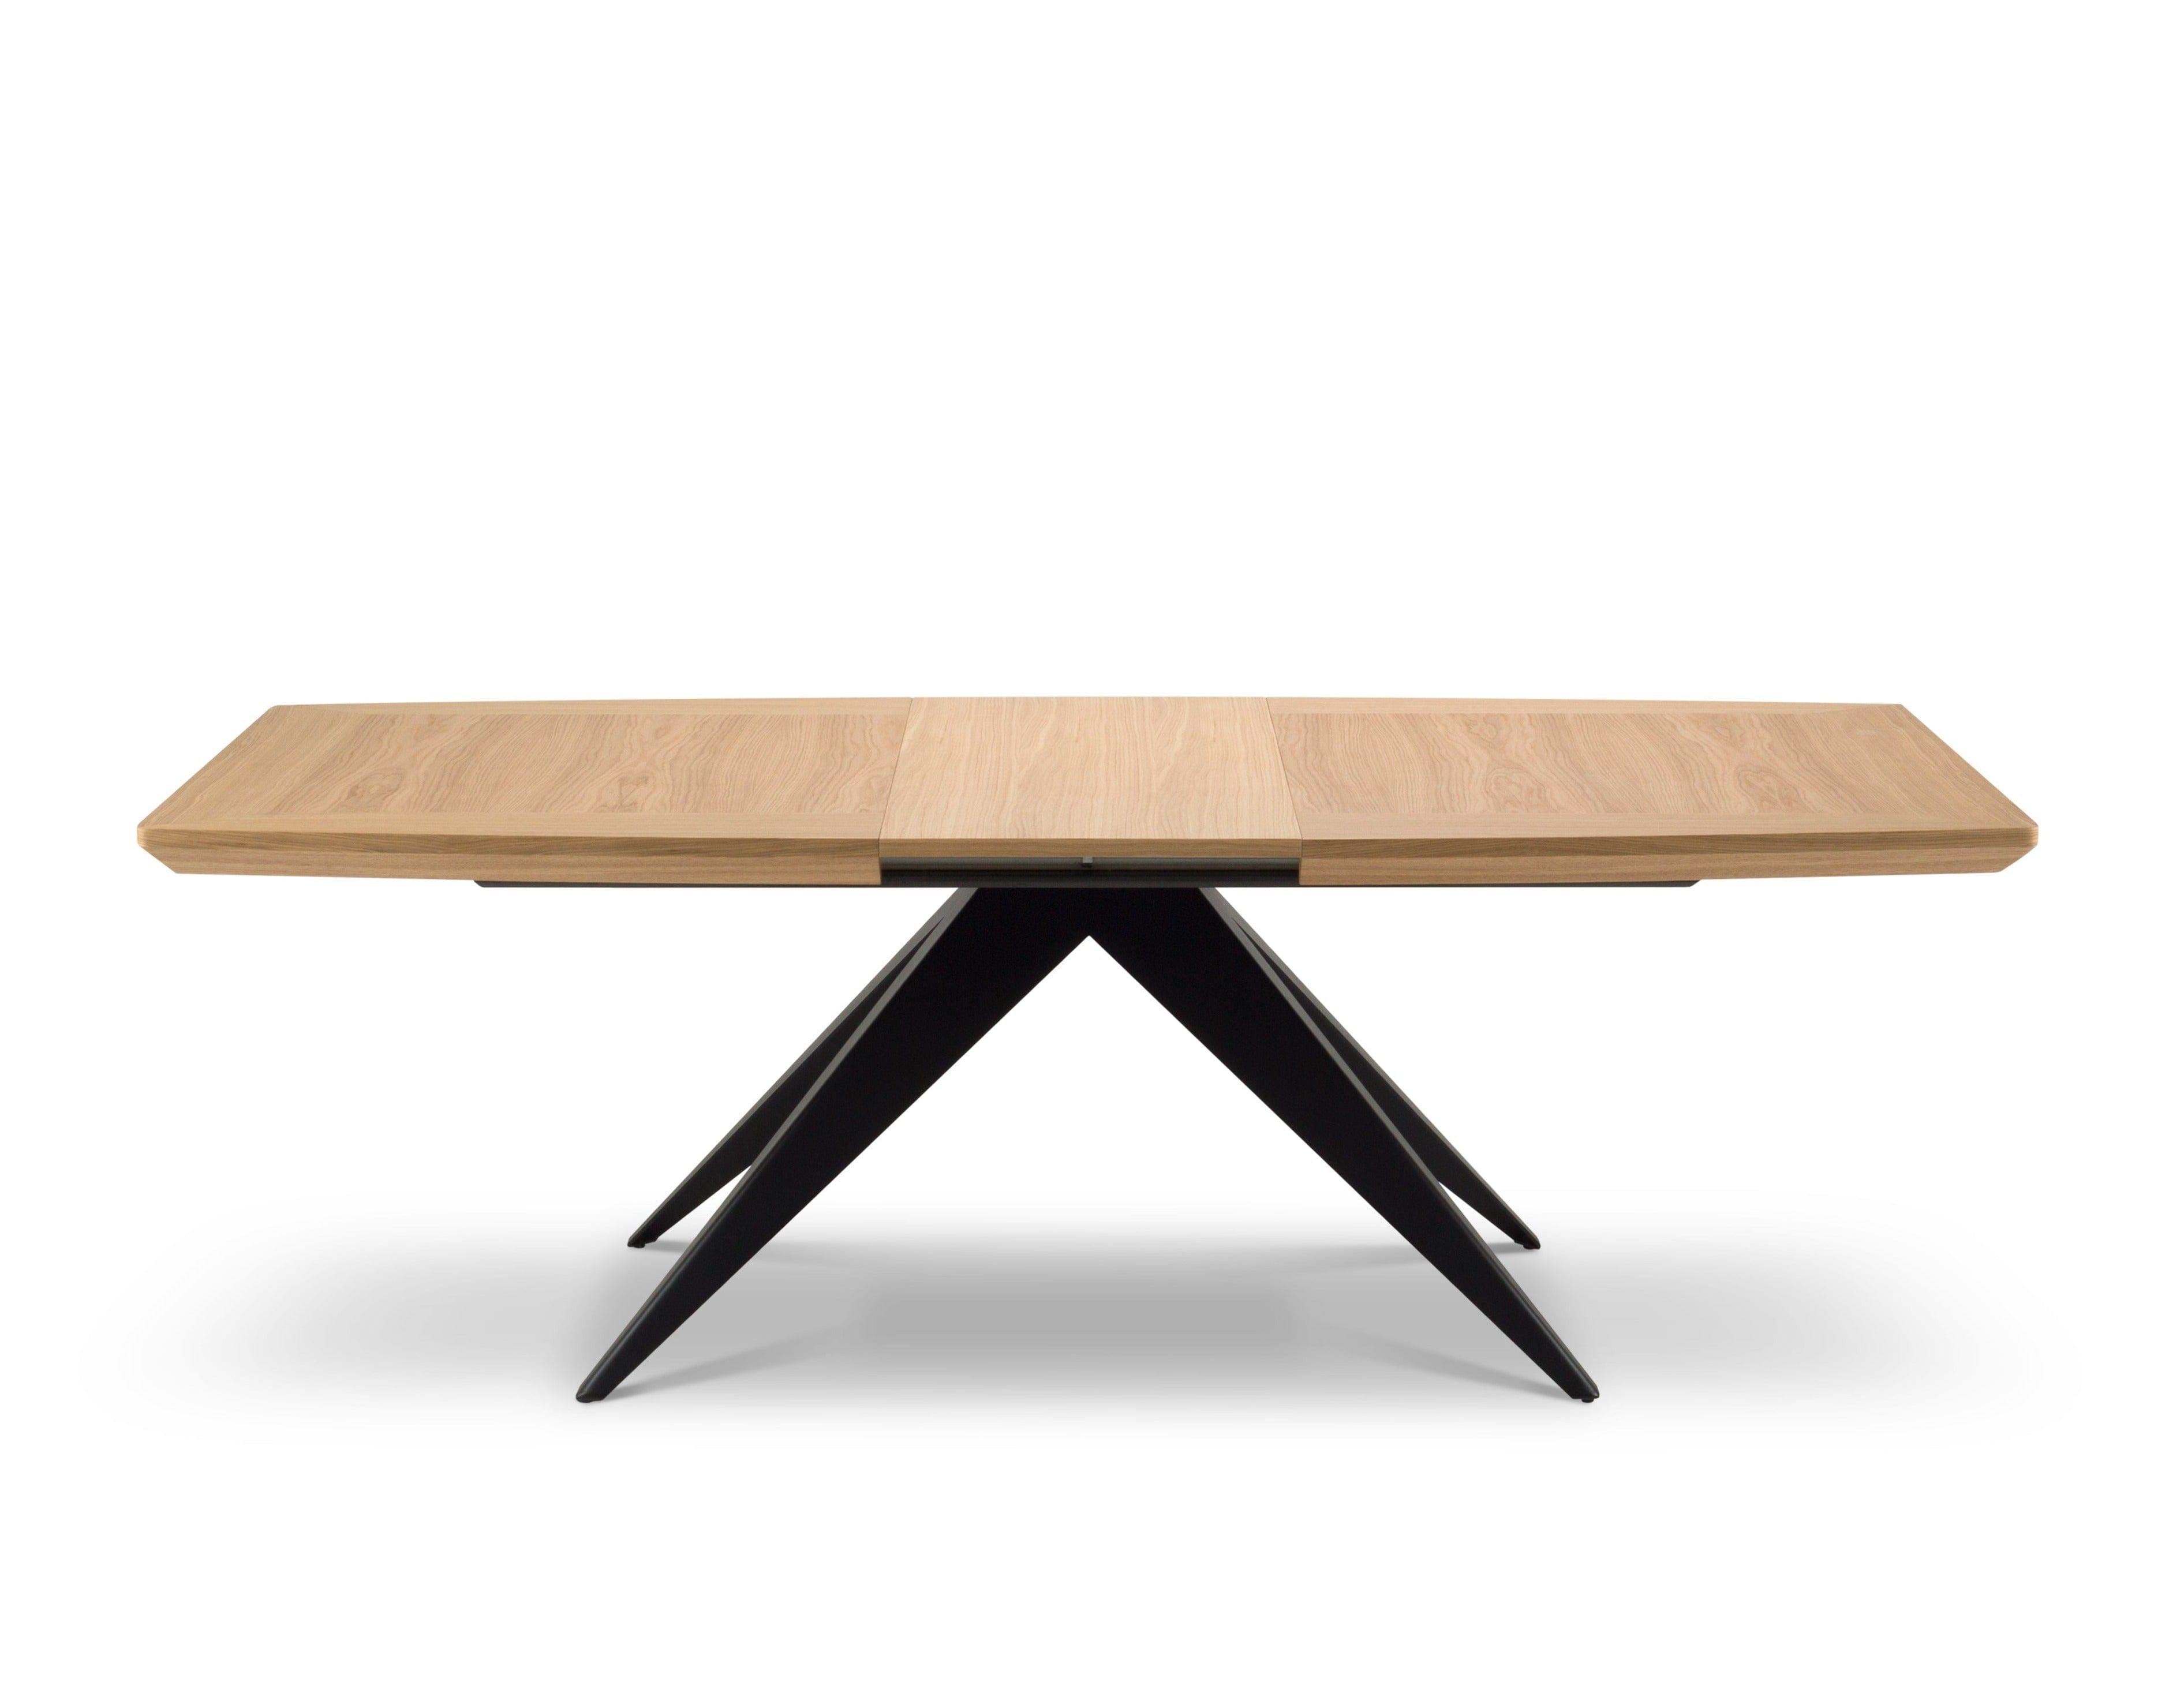 Stół rozkładany SKY jasny dąb, Windsor & Co, Eye on Design